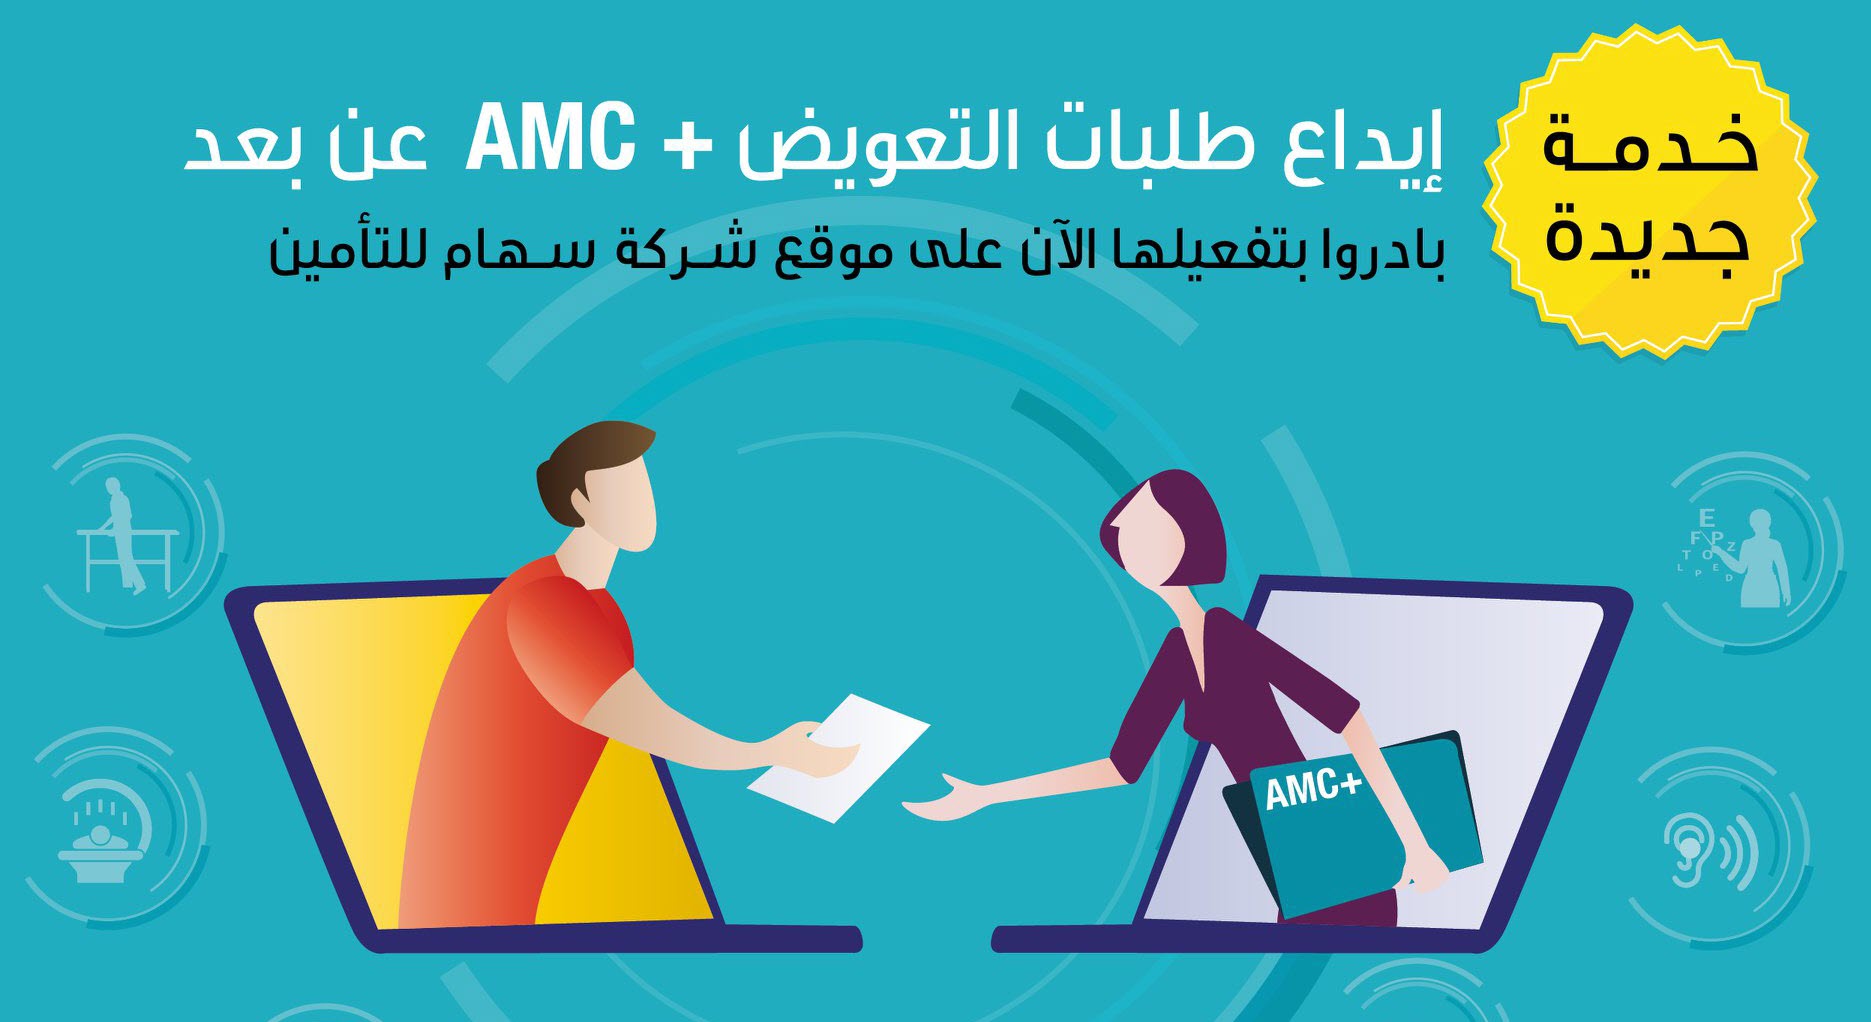 خدمة جديدة ايداع طلبات التعويض +AMC عن بعد